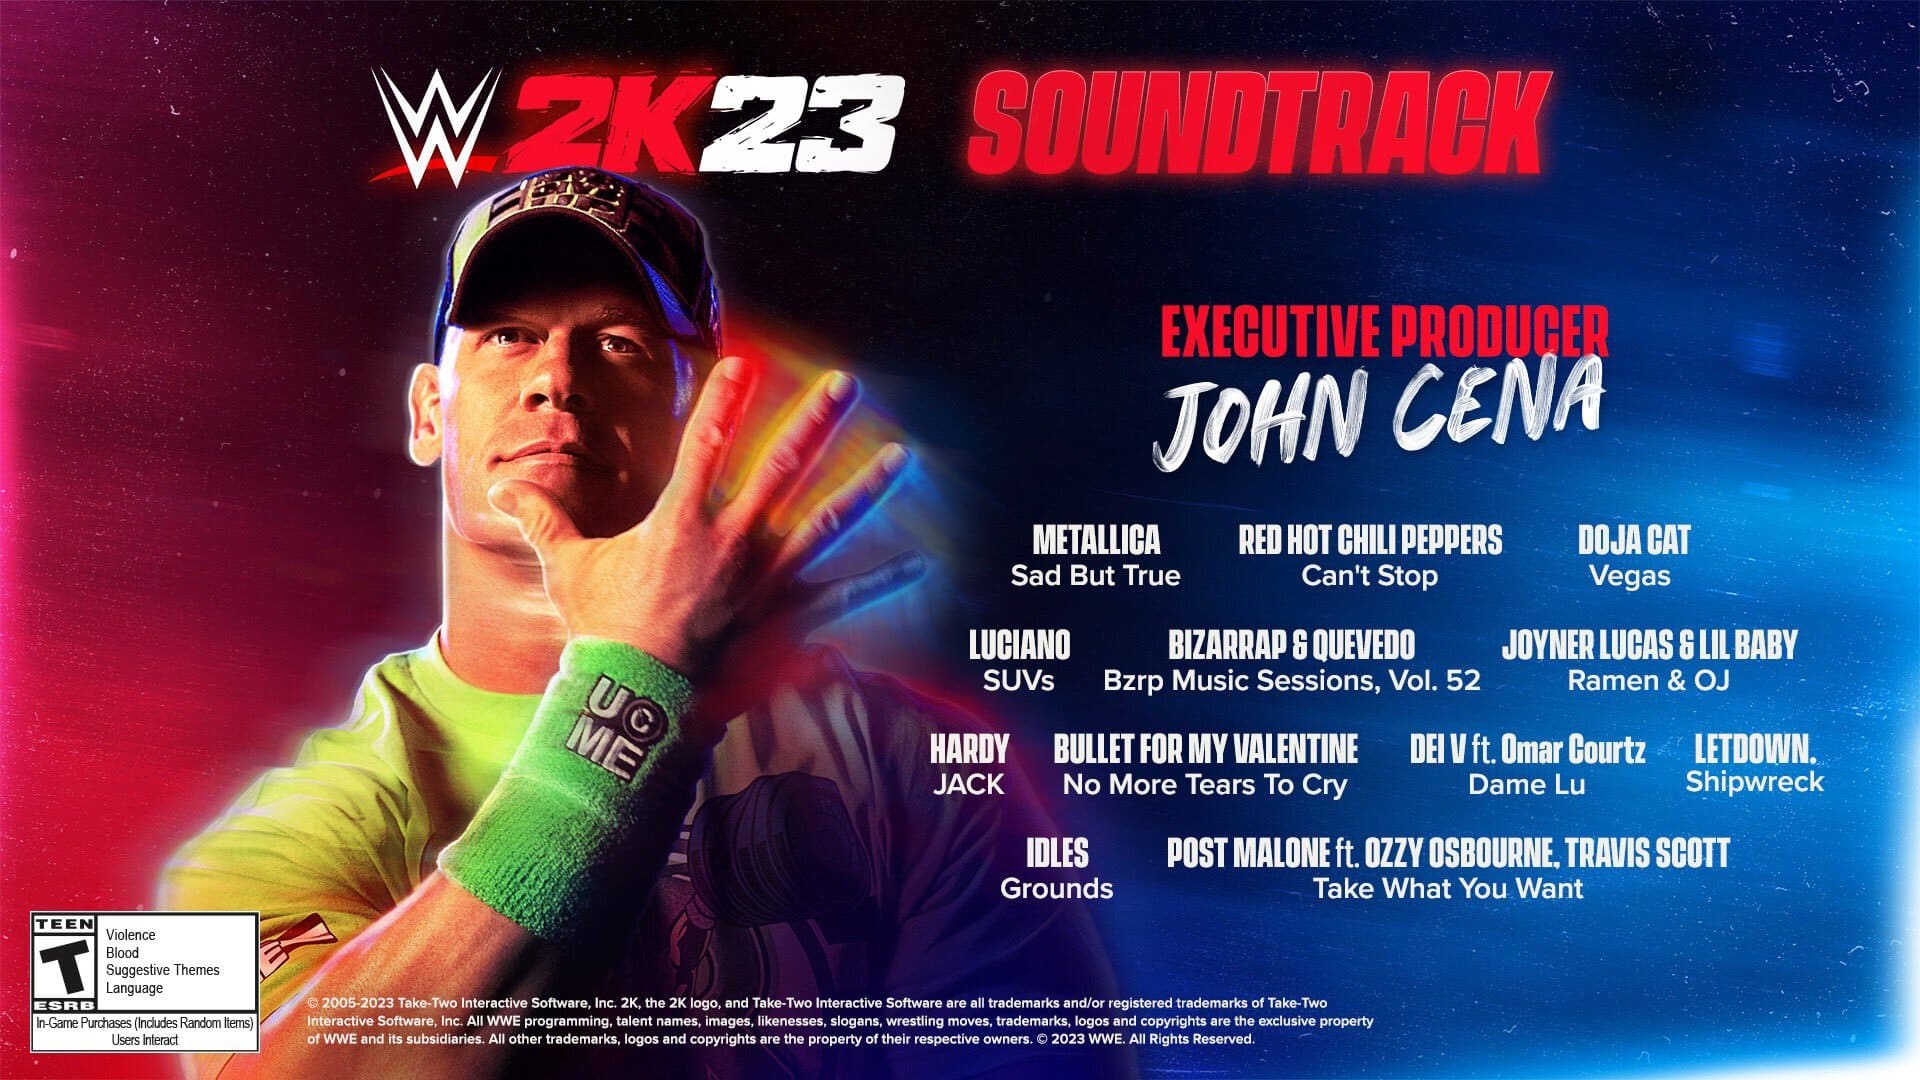 WWE 2K23 Soundtrack Revealed